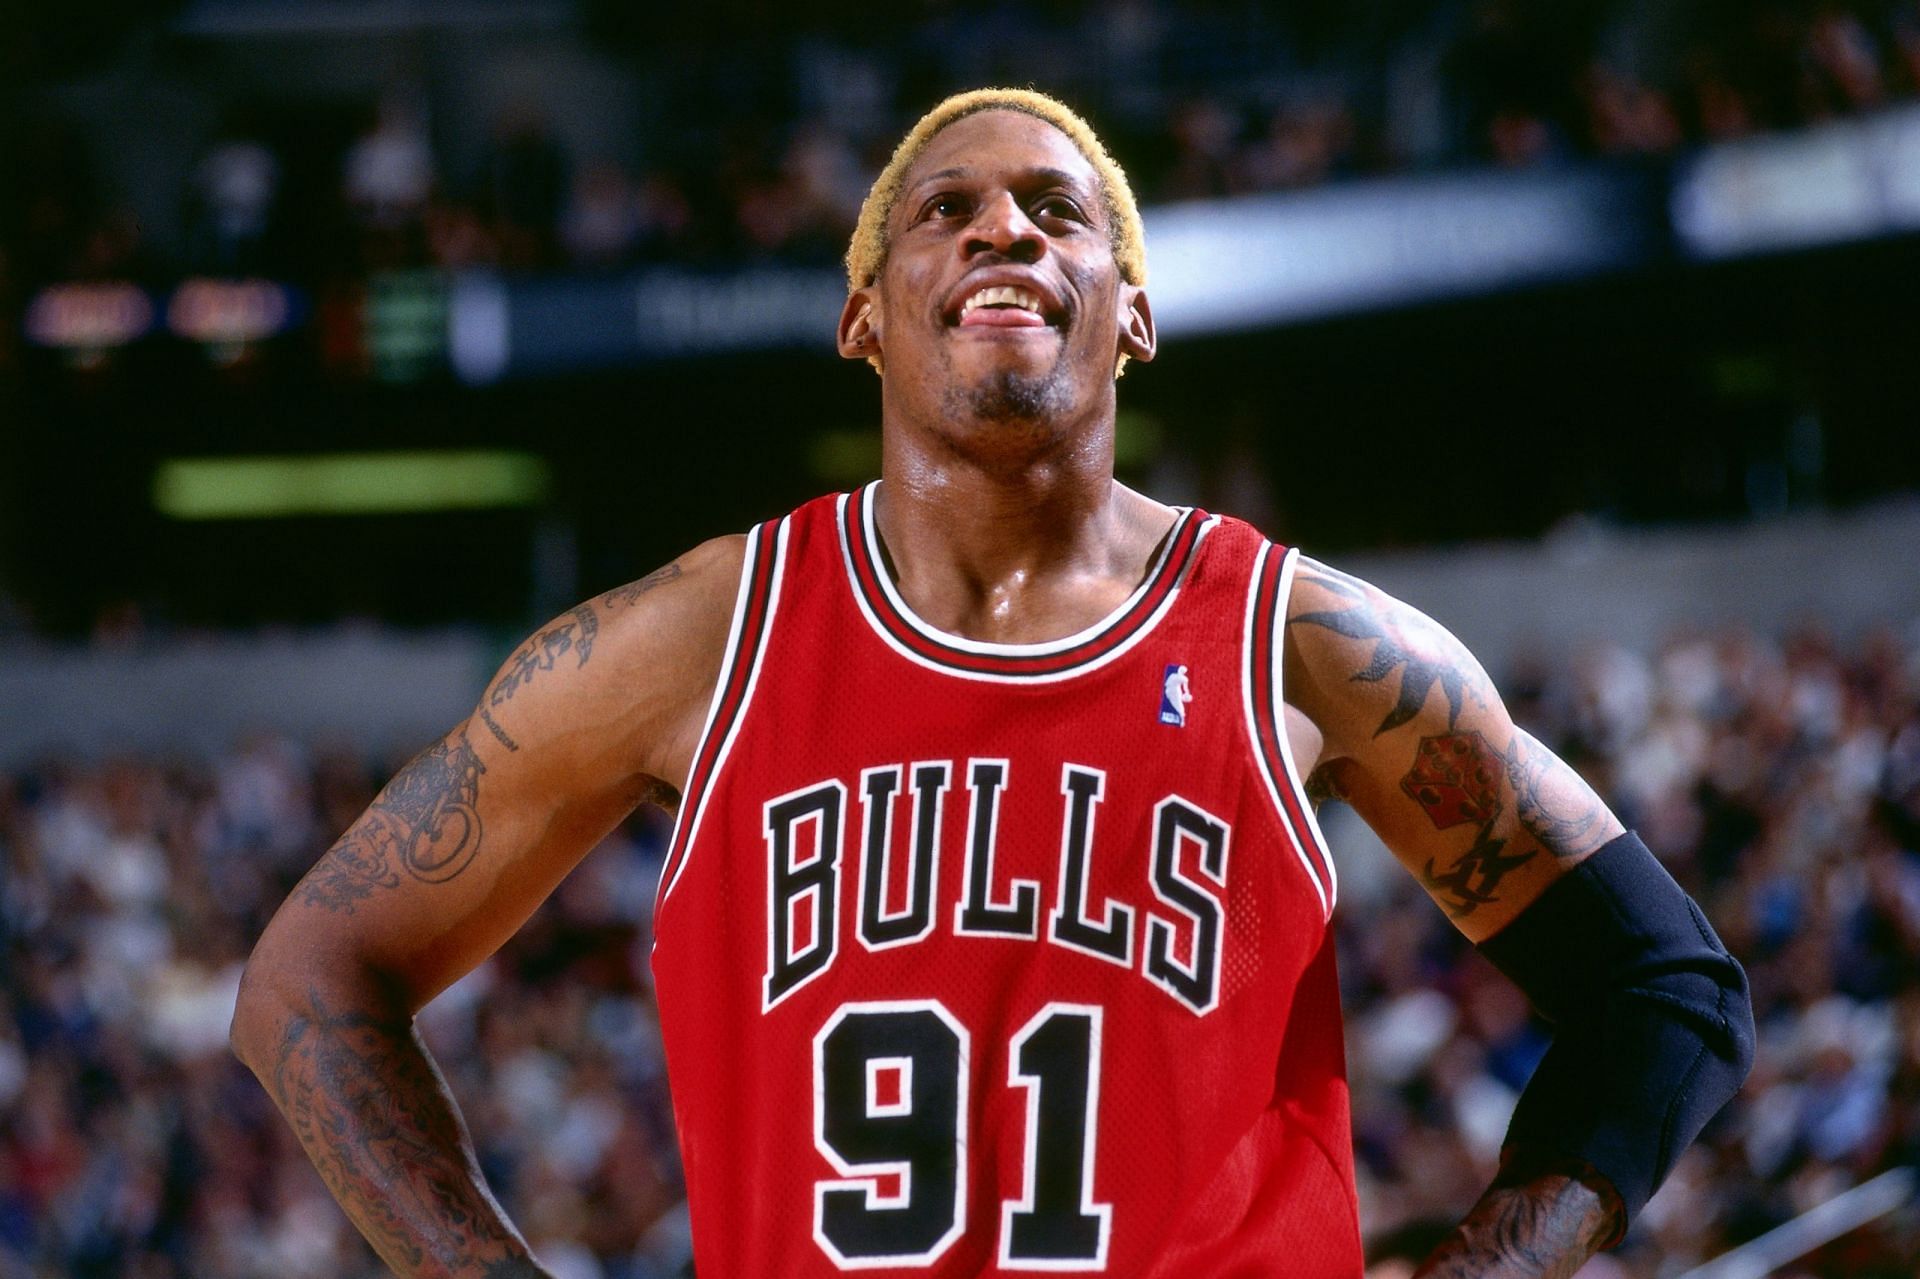 Chicago Bulls legend Dennis Rodman